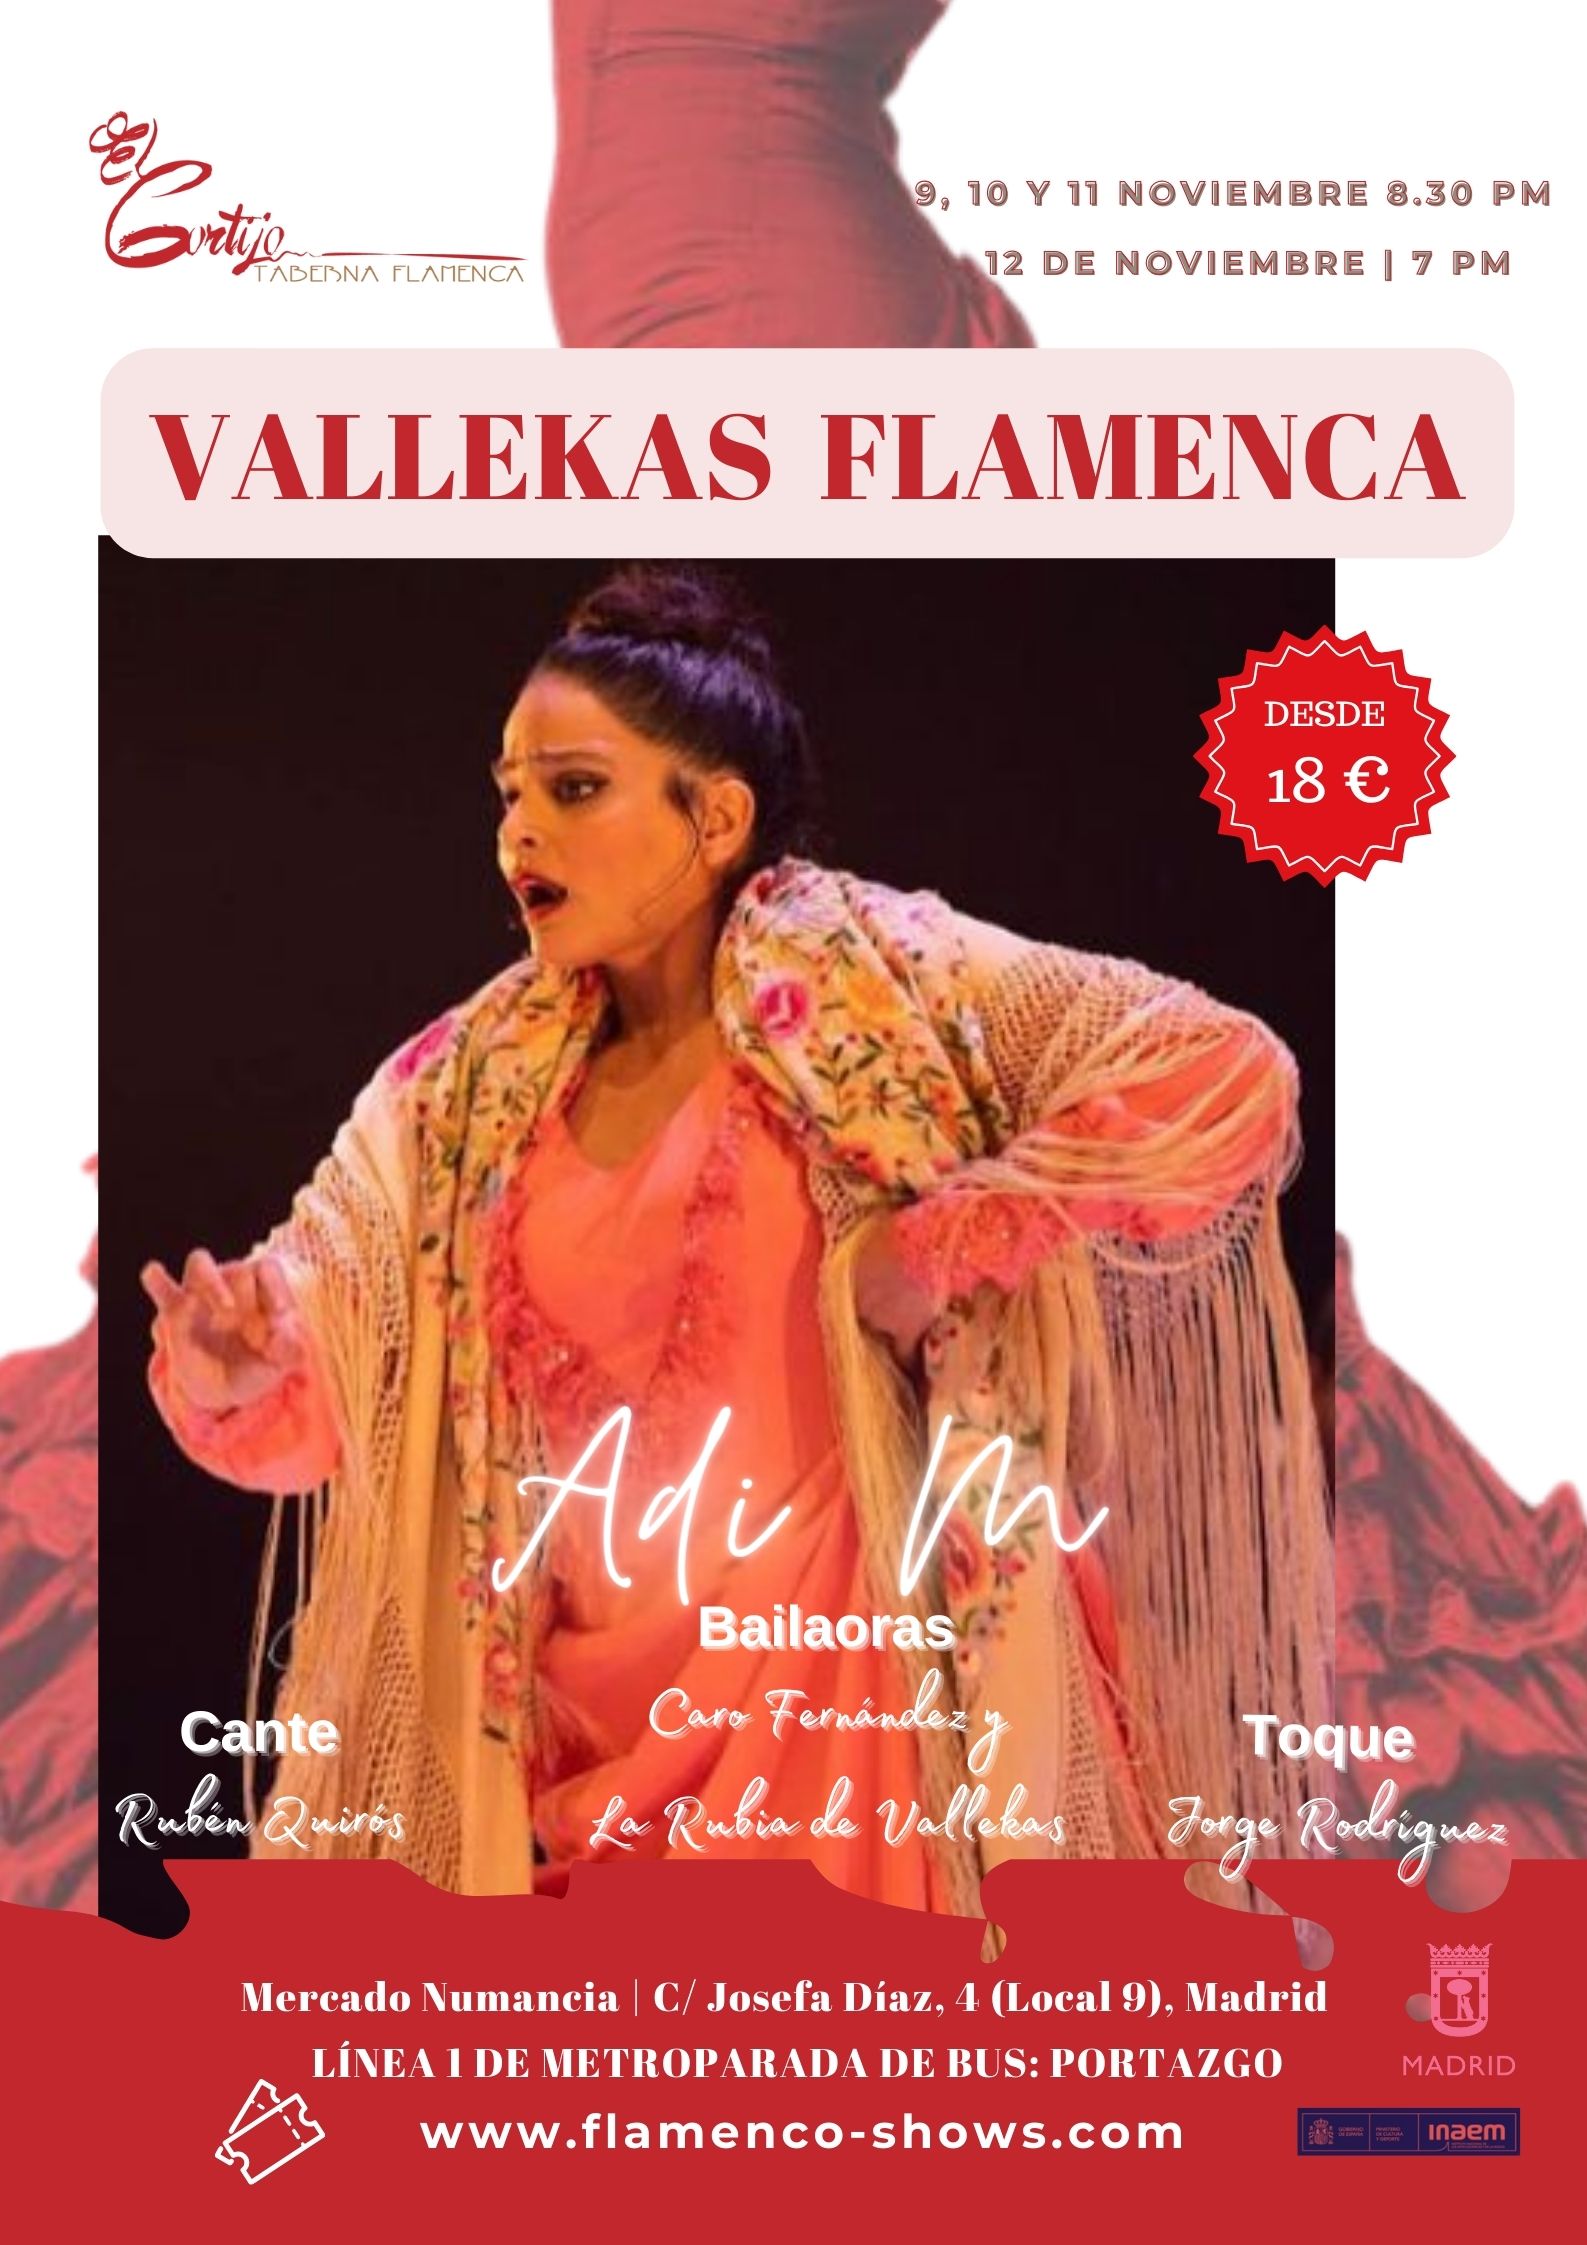 Programación del 9 al 12 de noviembre en tablao flamenco taberna el cortijo